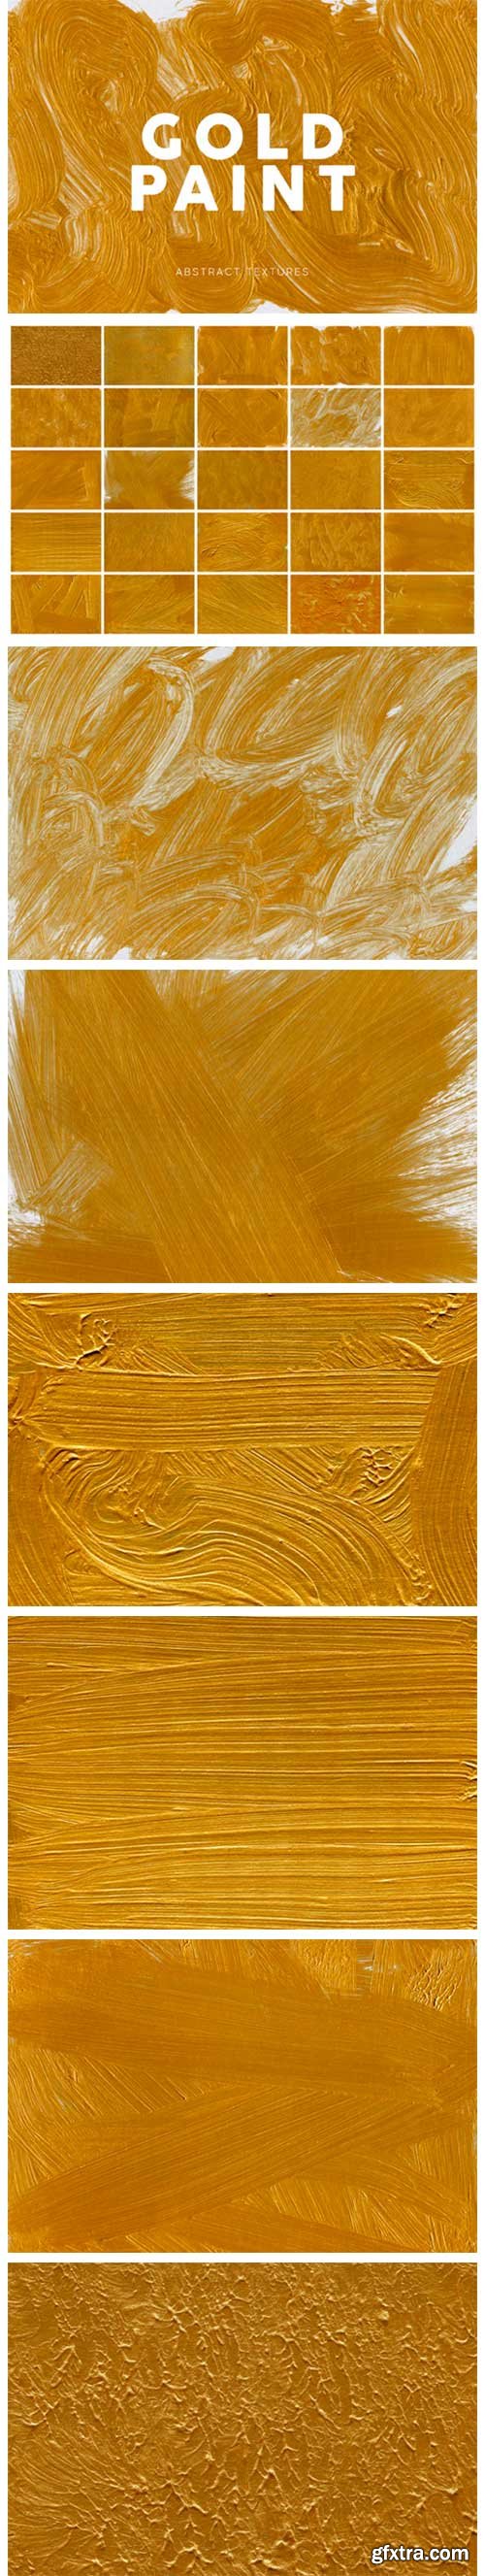 Gold Paint Textures 1 4671751